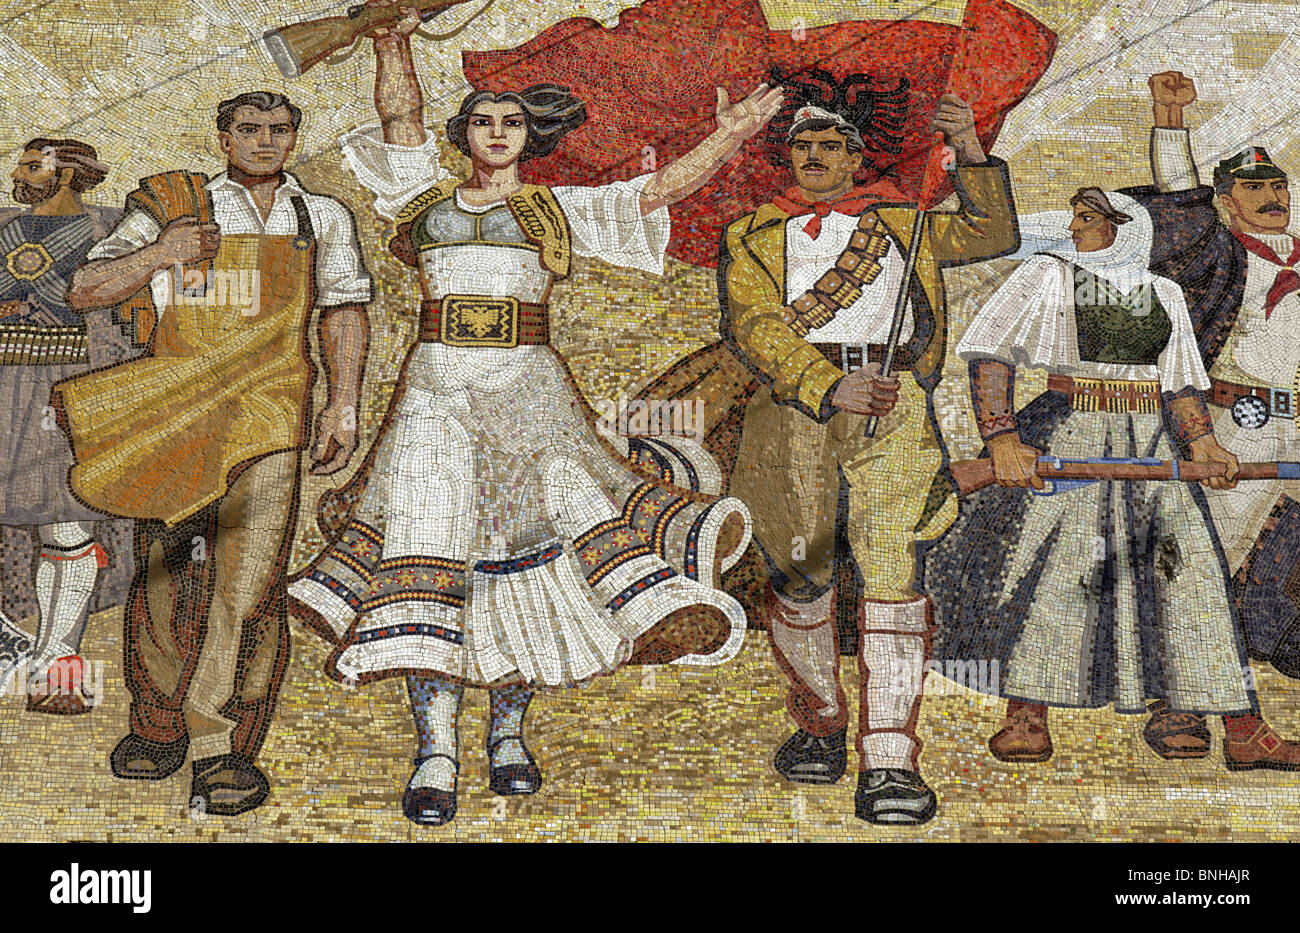 Tirana Albania propaganda socialista heroico mosaico museo nacional Skanderbeg square Europa Balcanes construyendo la ideología del comunismo Foto de stock